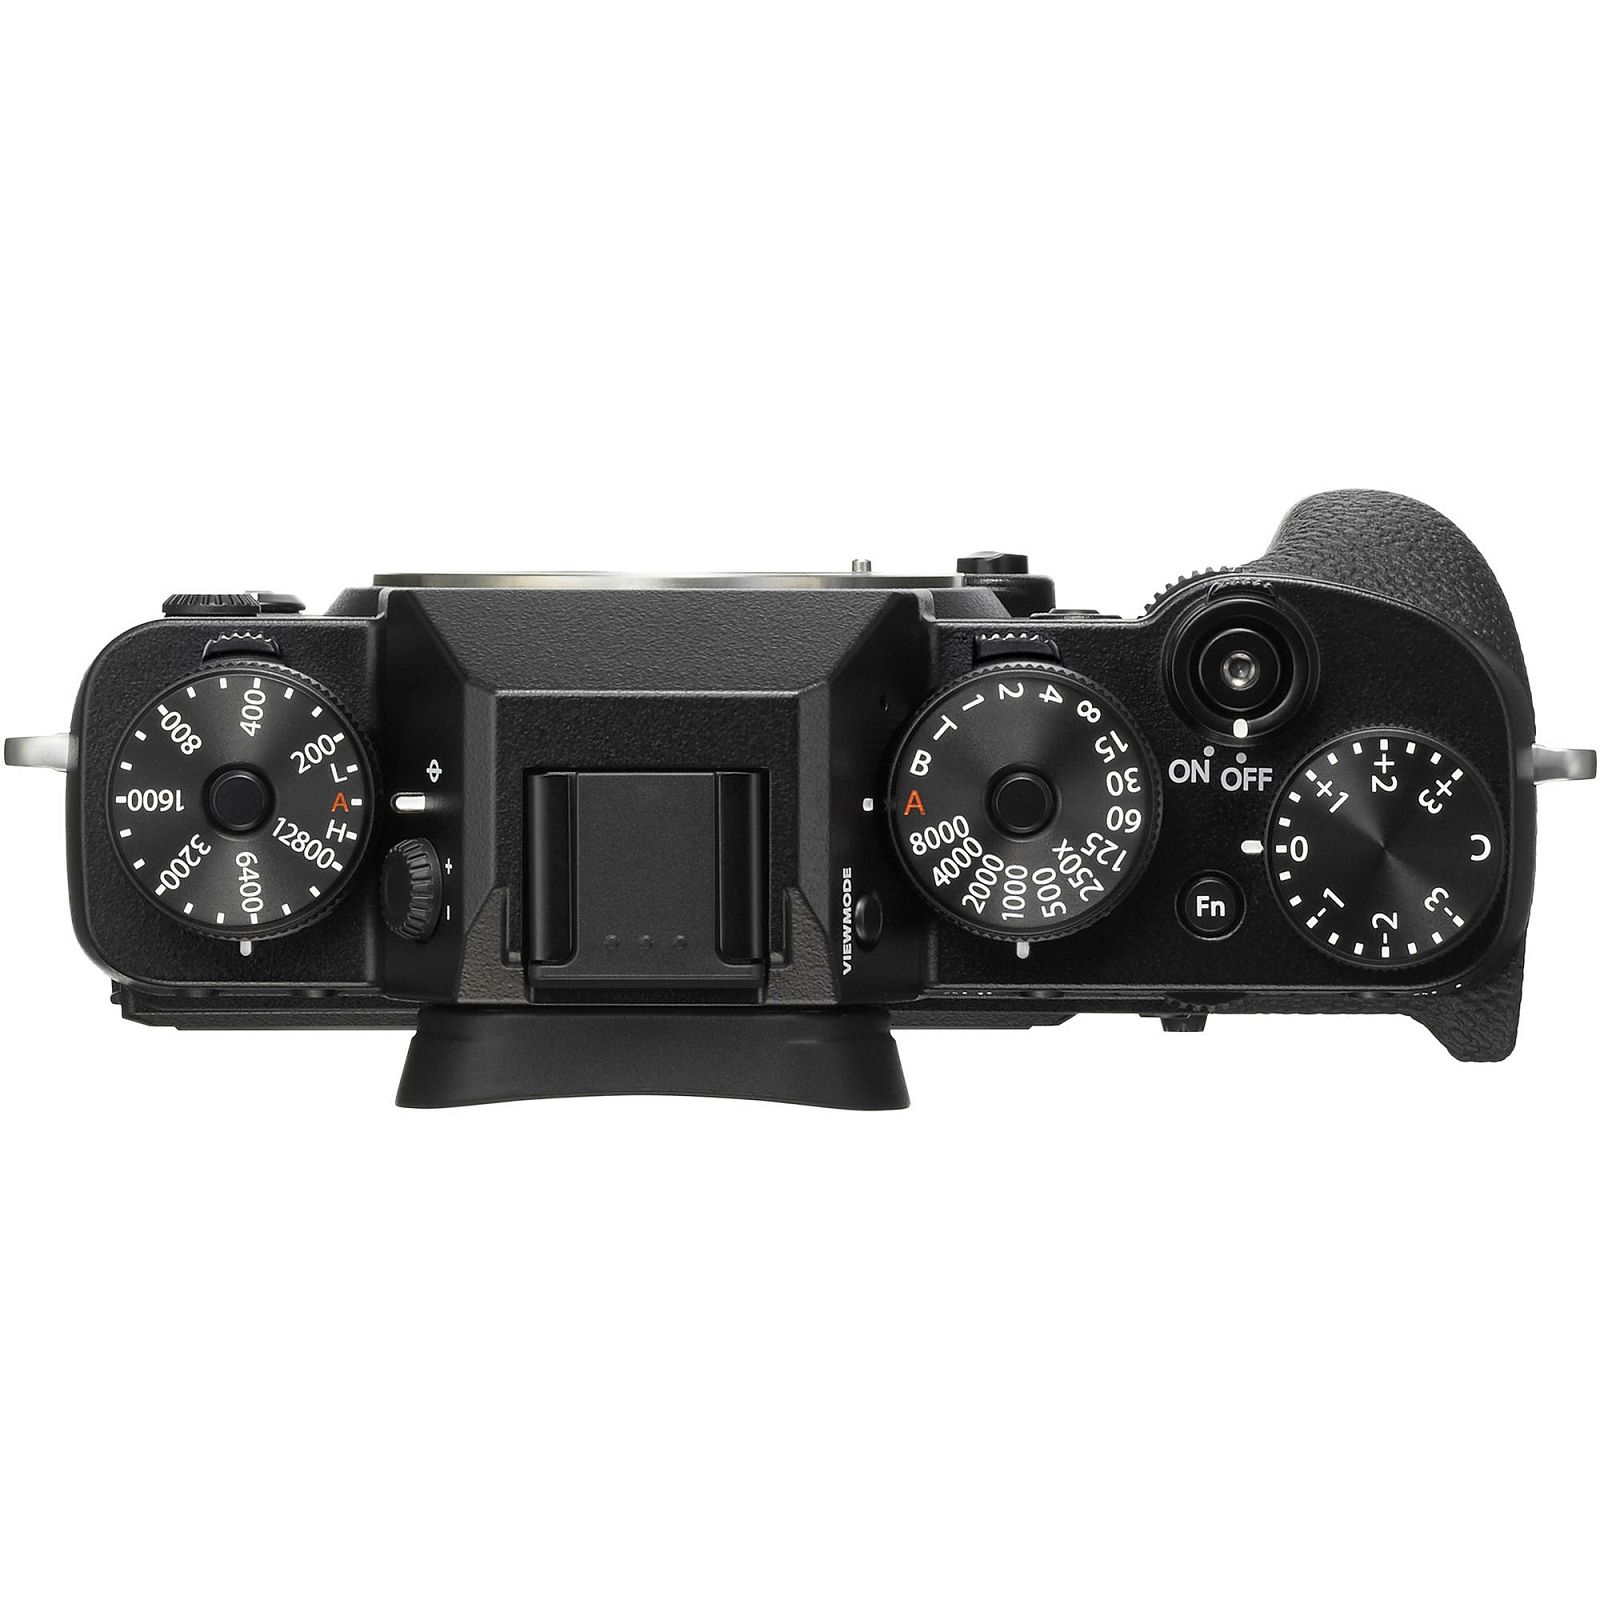 Fujifilm X-T2 Body Mirrorless Digital Camera Fuji fotoaparat 24MP X-Trans CMOS III 3,0" LCD 1040K + OVF 3 way Tilt